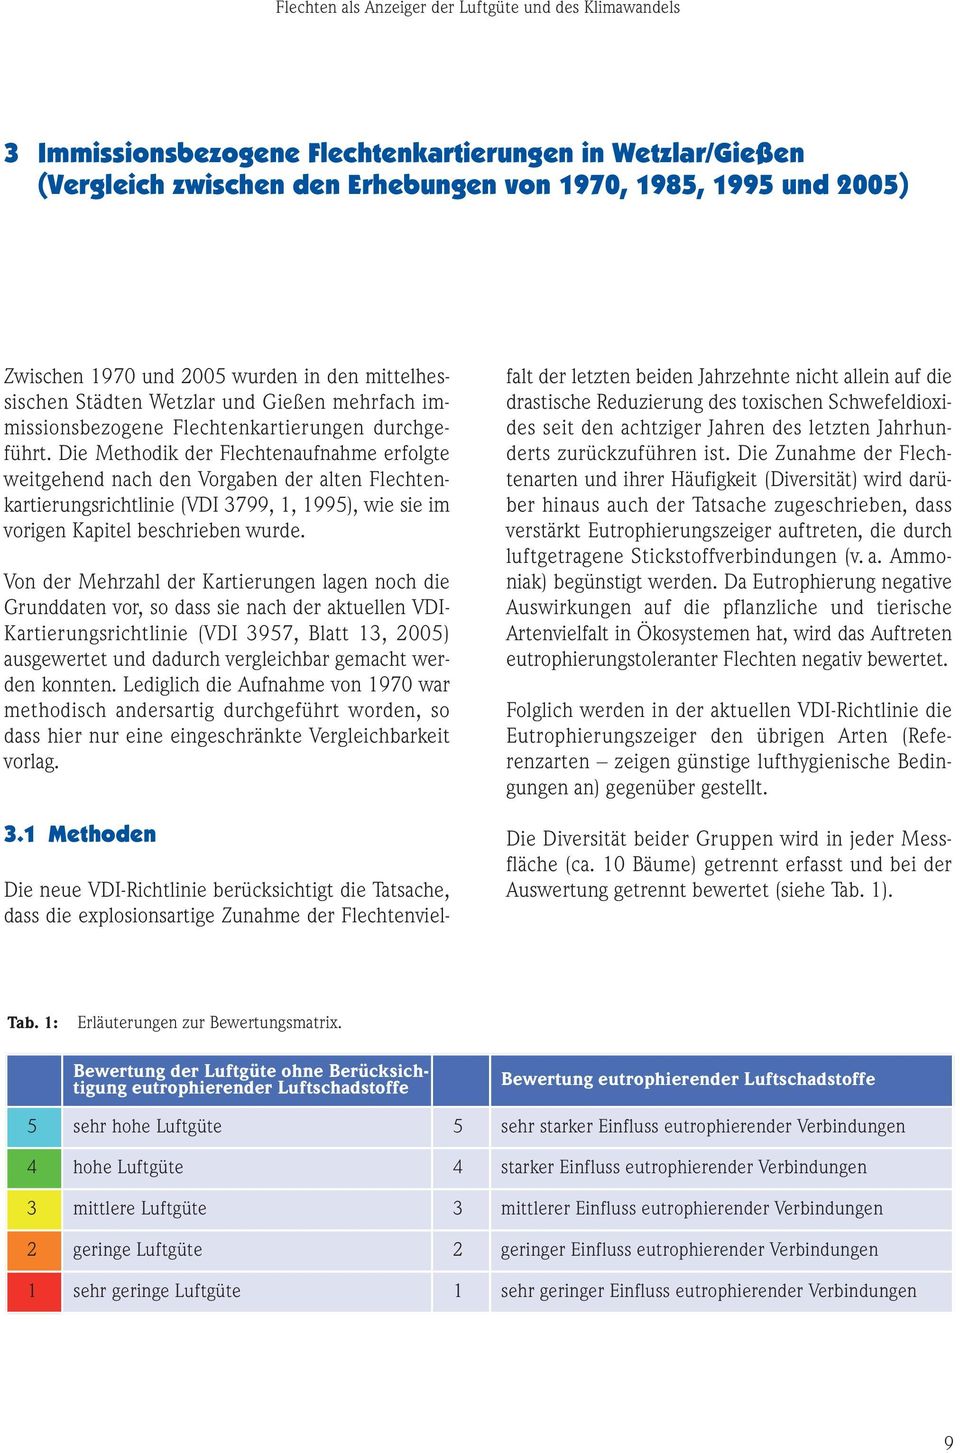 Die Methodik der Flechtenaufnahme erfolgte weitgehend nach den Vorgaben der alten Flechtenkartierungsrichtlinie (VDI 3799, 1, 1995), wie sie im vorigen Kapitel beschrieben wurde.